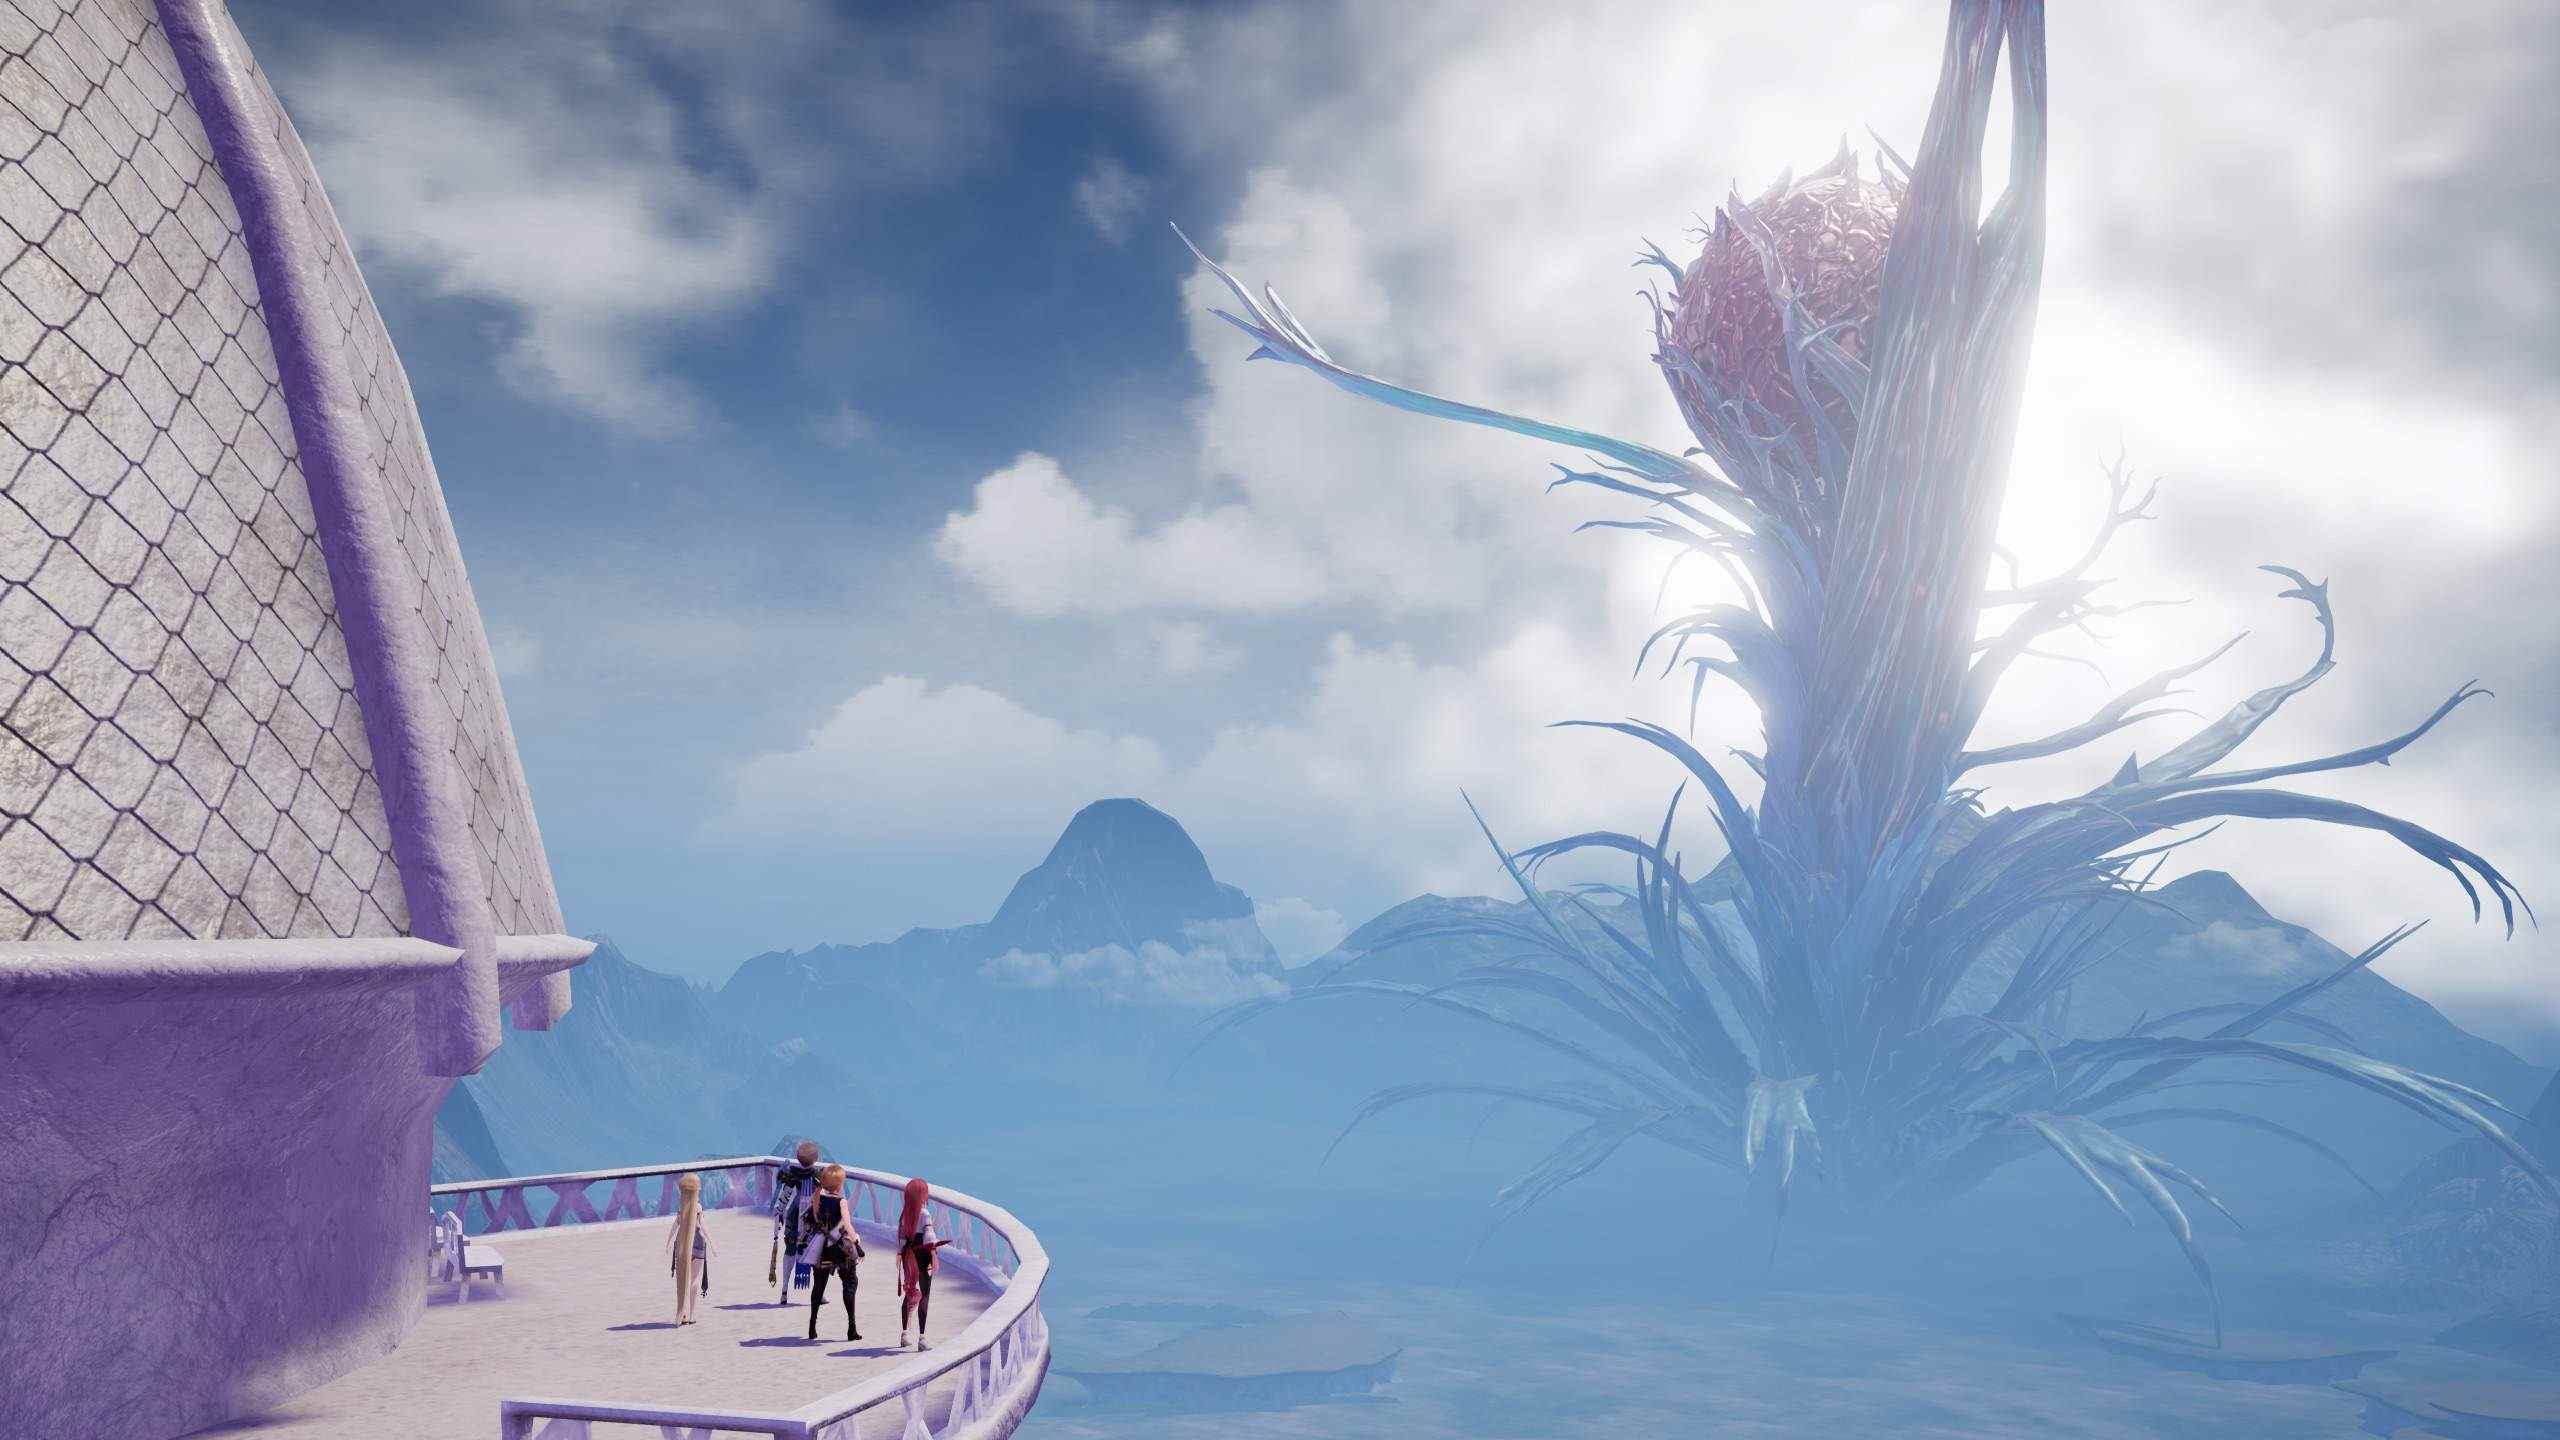 nouveaux détails du gameplay de Harvestella action RPG simulation de vie agriculture combat Nemea visuels captures d'écran magnifiques